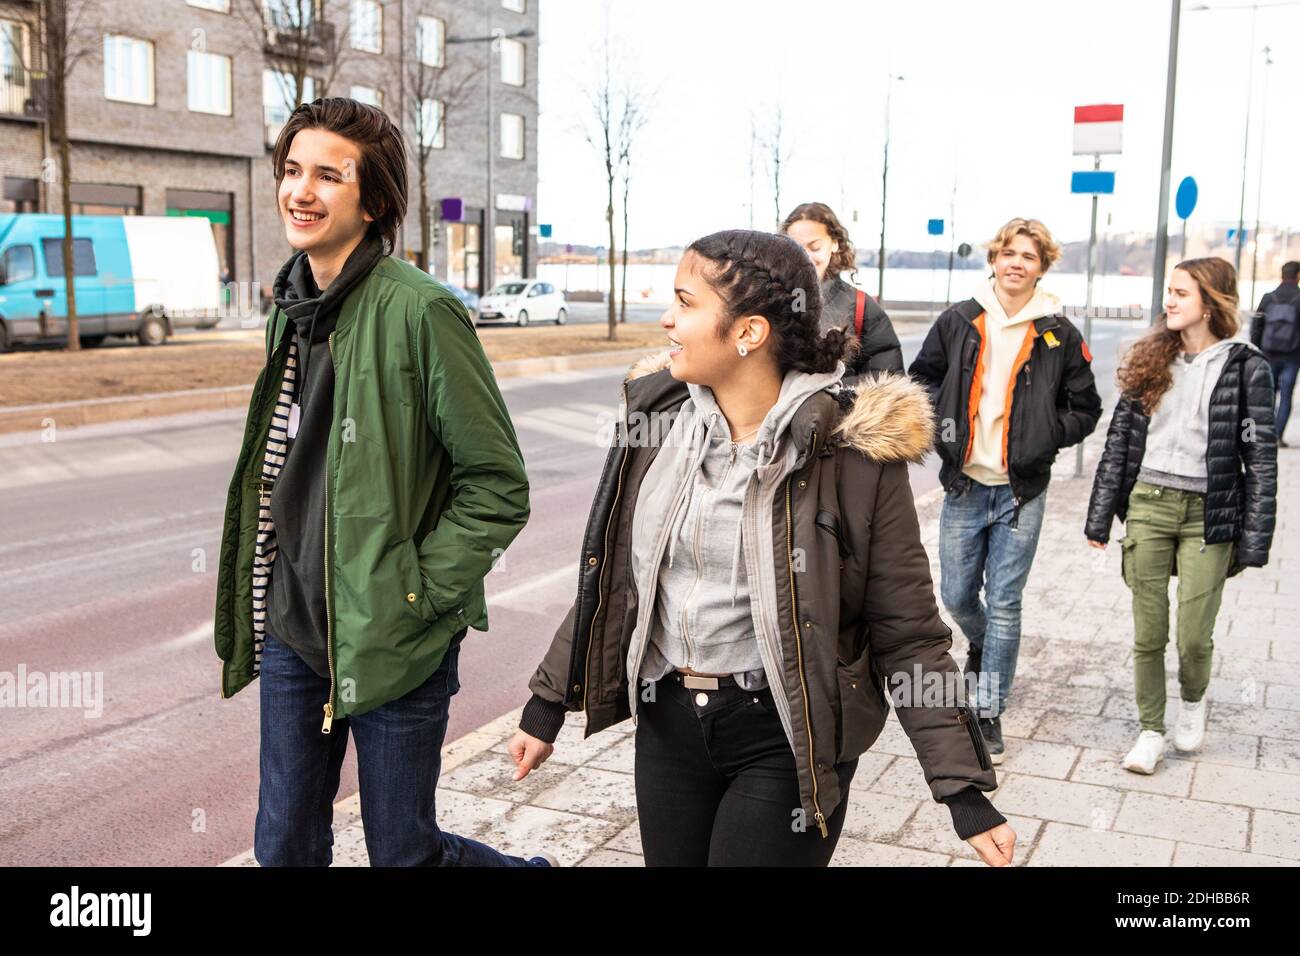 Adolescentes multiétnicos sonriendo con ropa cálida caminando en la acera ciudad Foto de stock